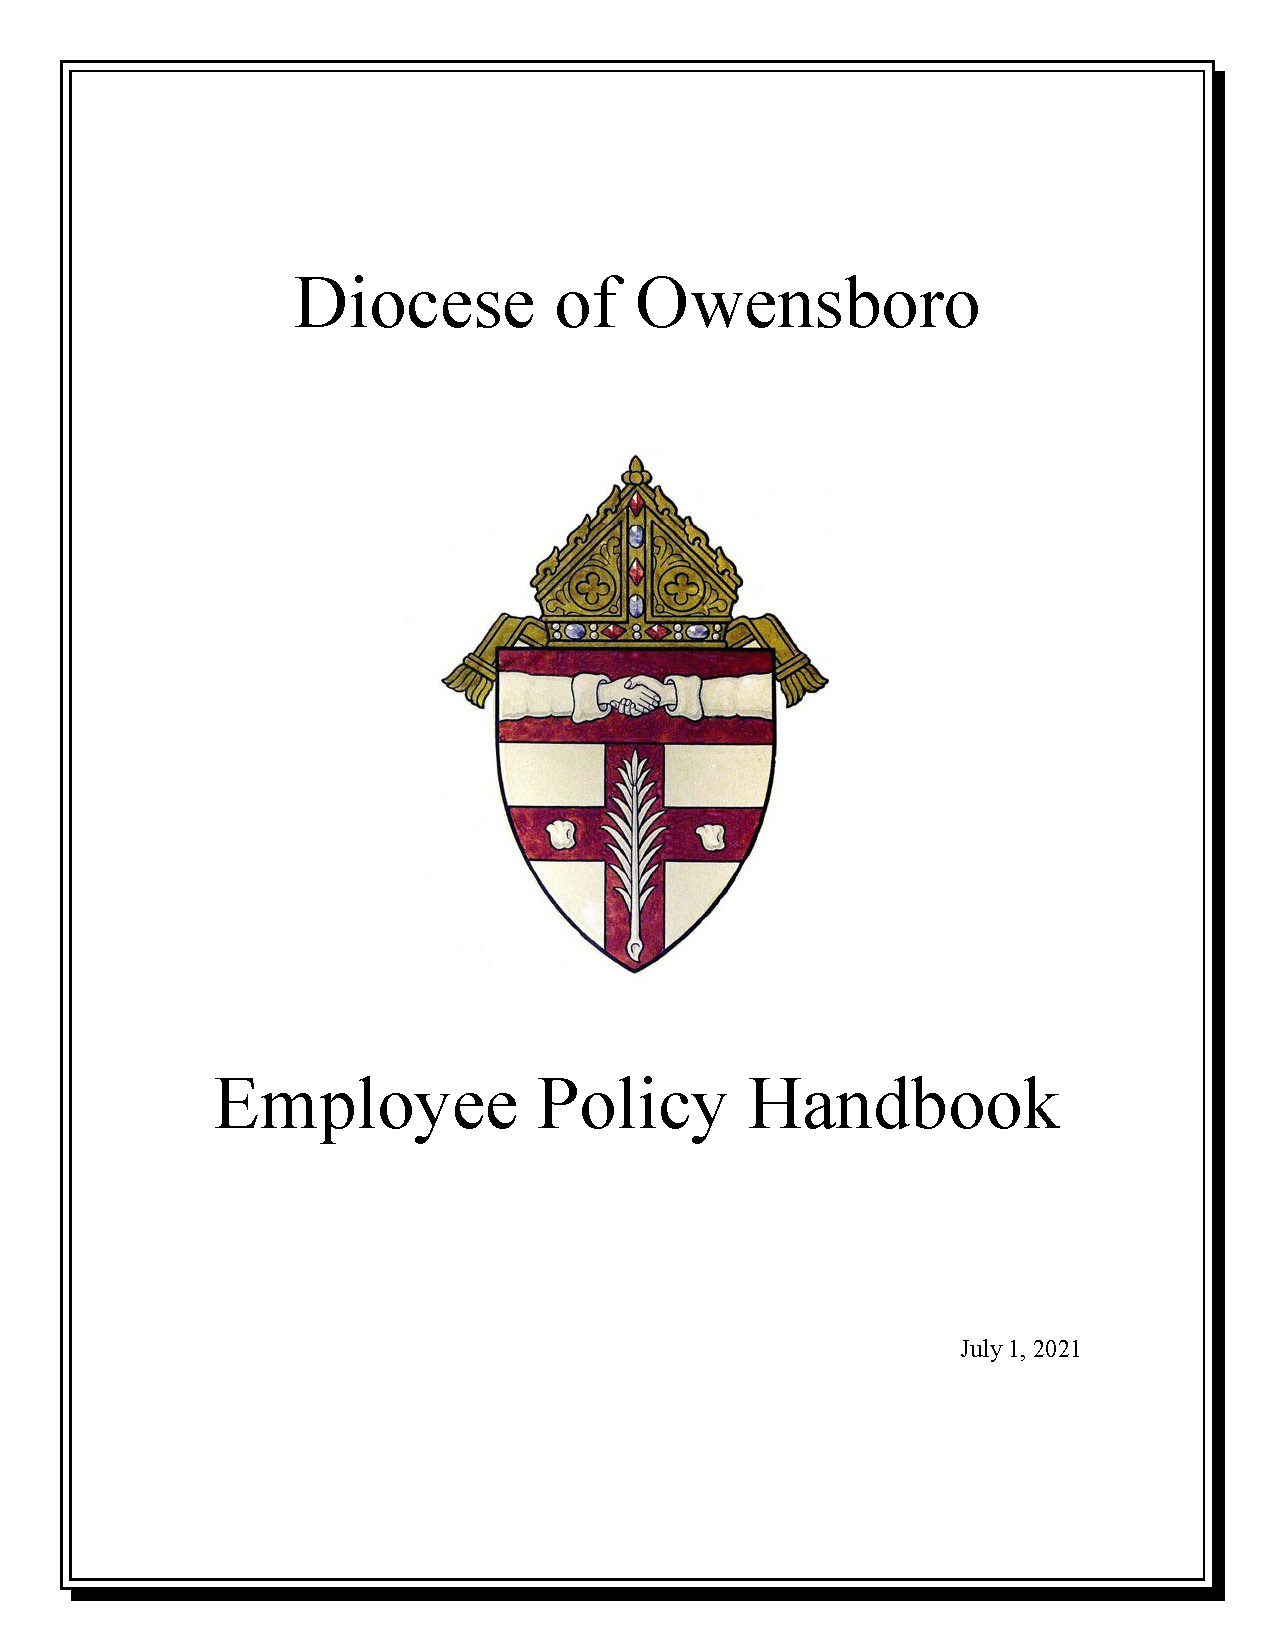 Employee Policy Handbook image